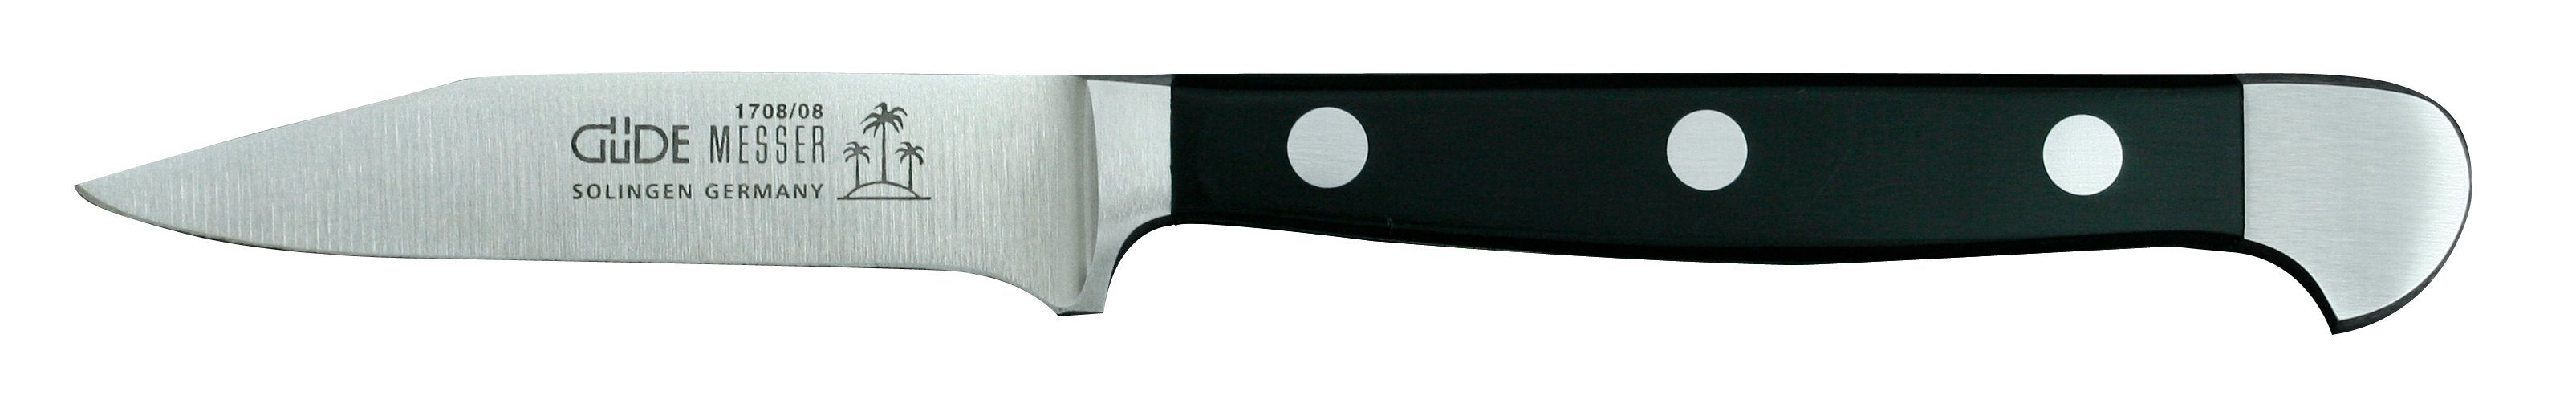 Güde Messer Solingen Schale Alpha, Messerstahl, Gemüsemesser 8 cm - CVM-Messerstahl - Griffschalen Hostaform